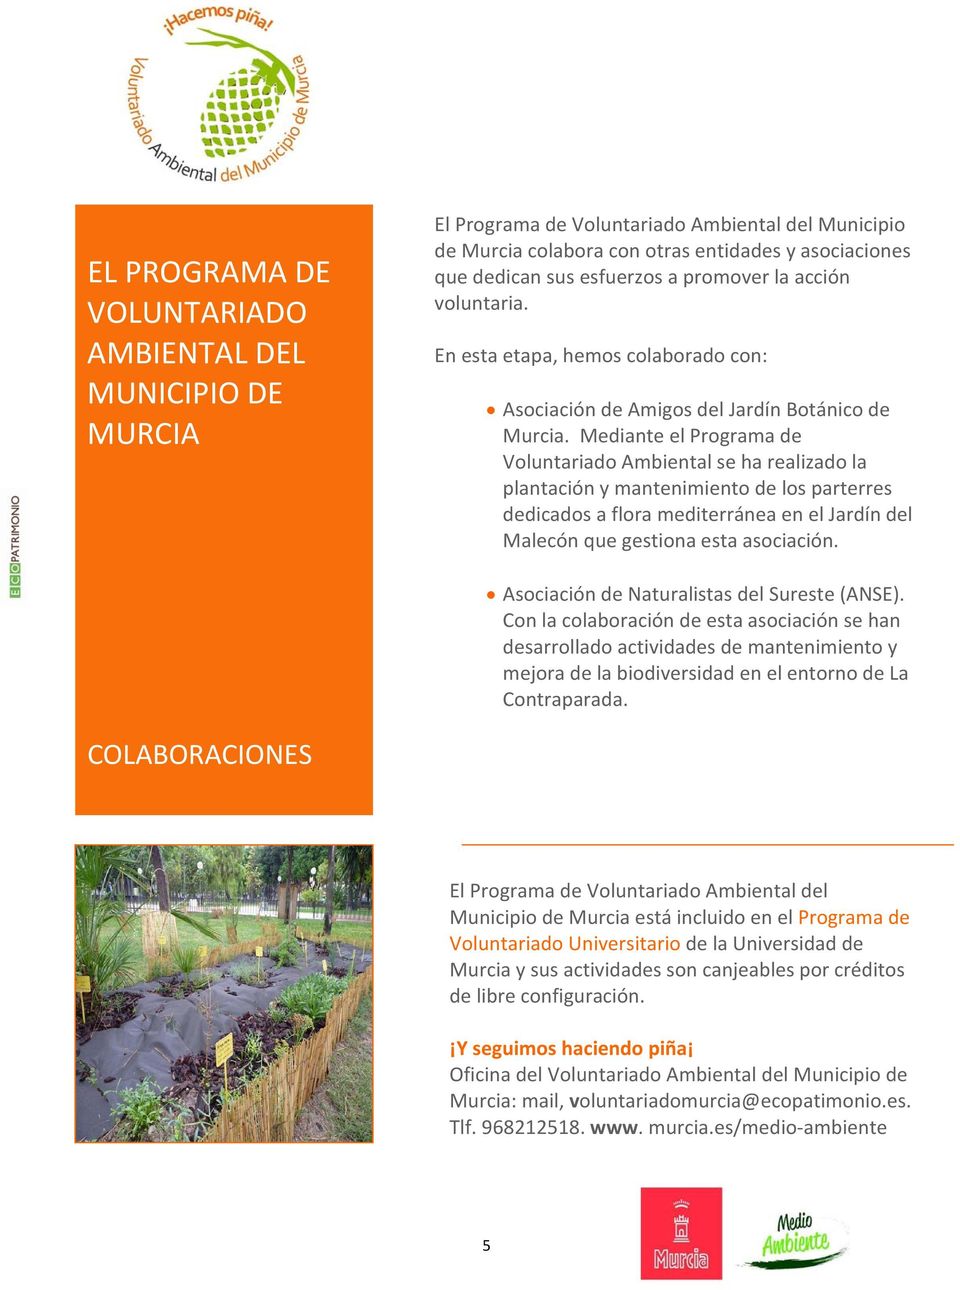 Mediante el Programa de Voluntariado Ambiental se ha realizado la plantación y mantenimiento de los parterres dedicados a flora mediterránea en el Jardín del Malecón que gestiona esta asociación.